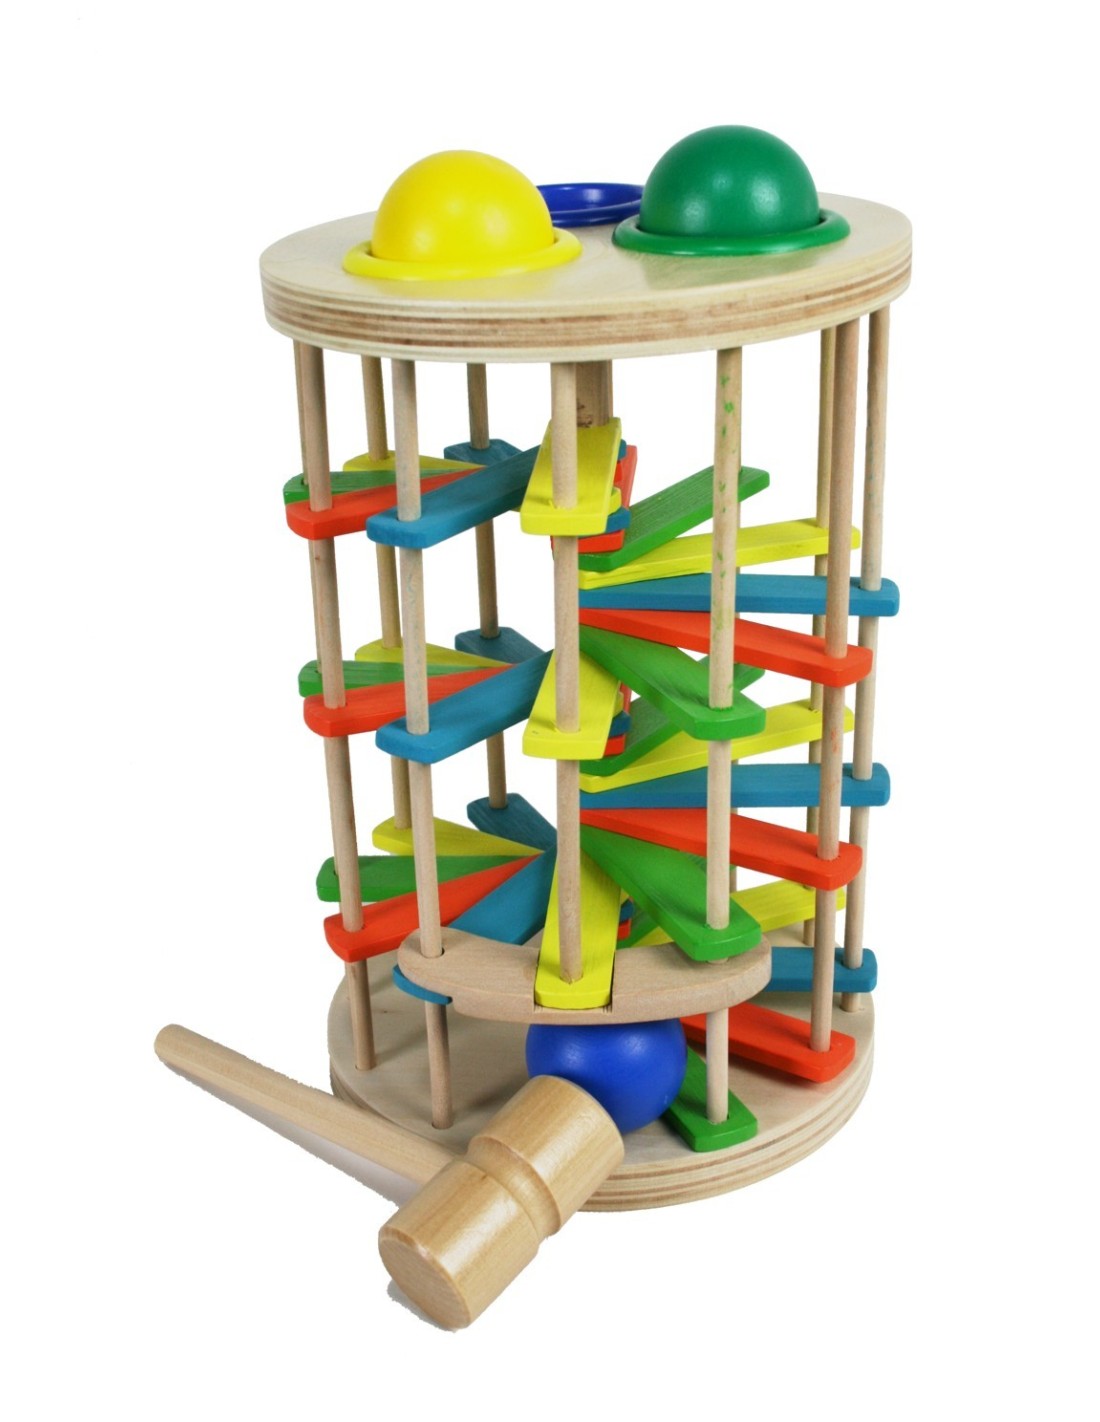 Torre con bolas de colores para de Golpear de Madera con martillo juego de coordinación visual-manual.